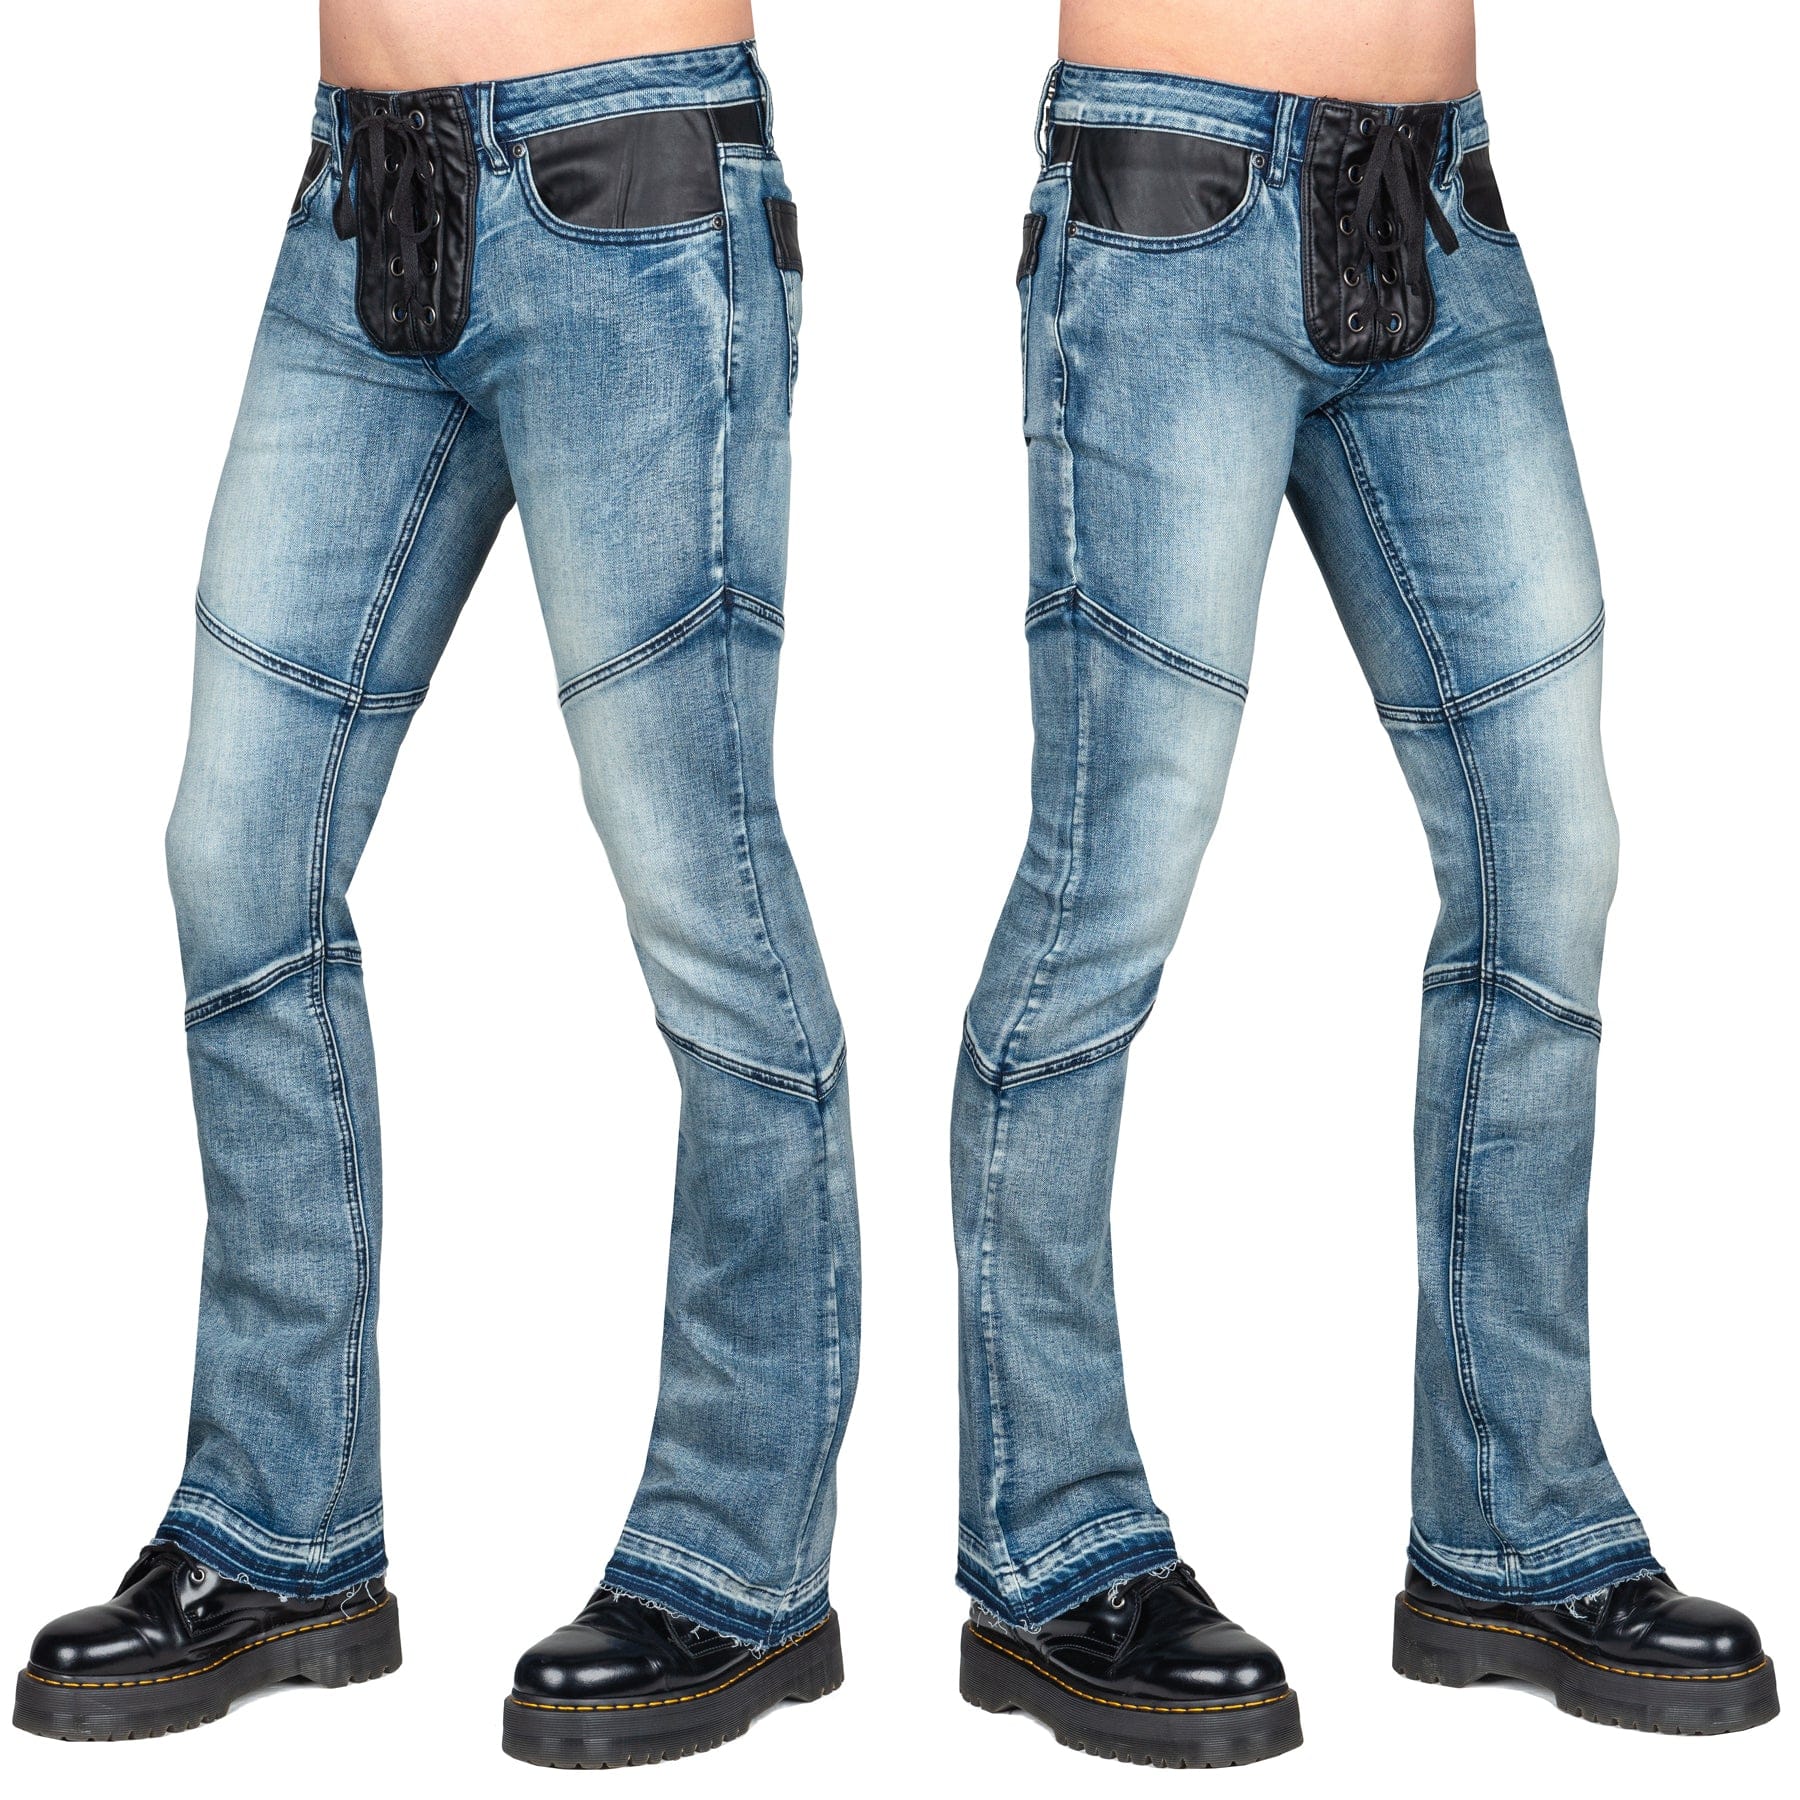 Wornstar Clothing Mens Jeans. Troubadour Denim Jeans - Classic Blue